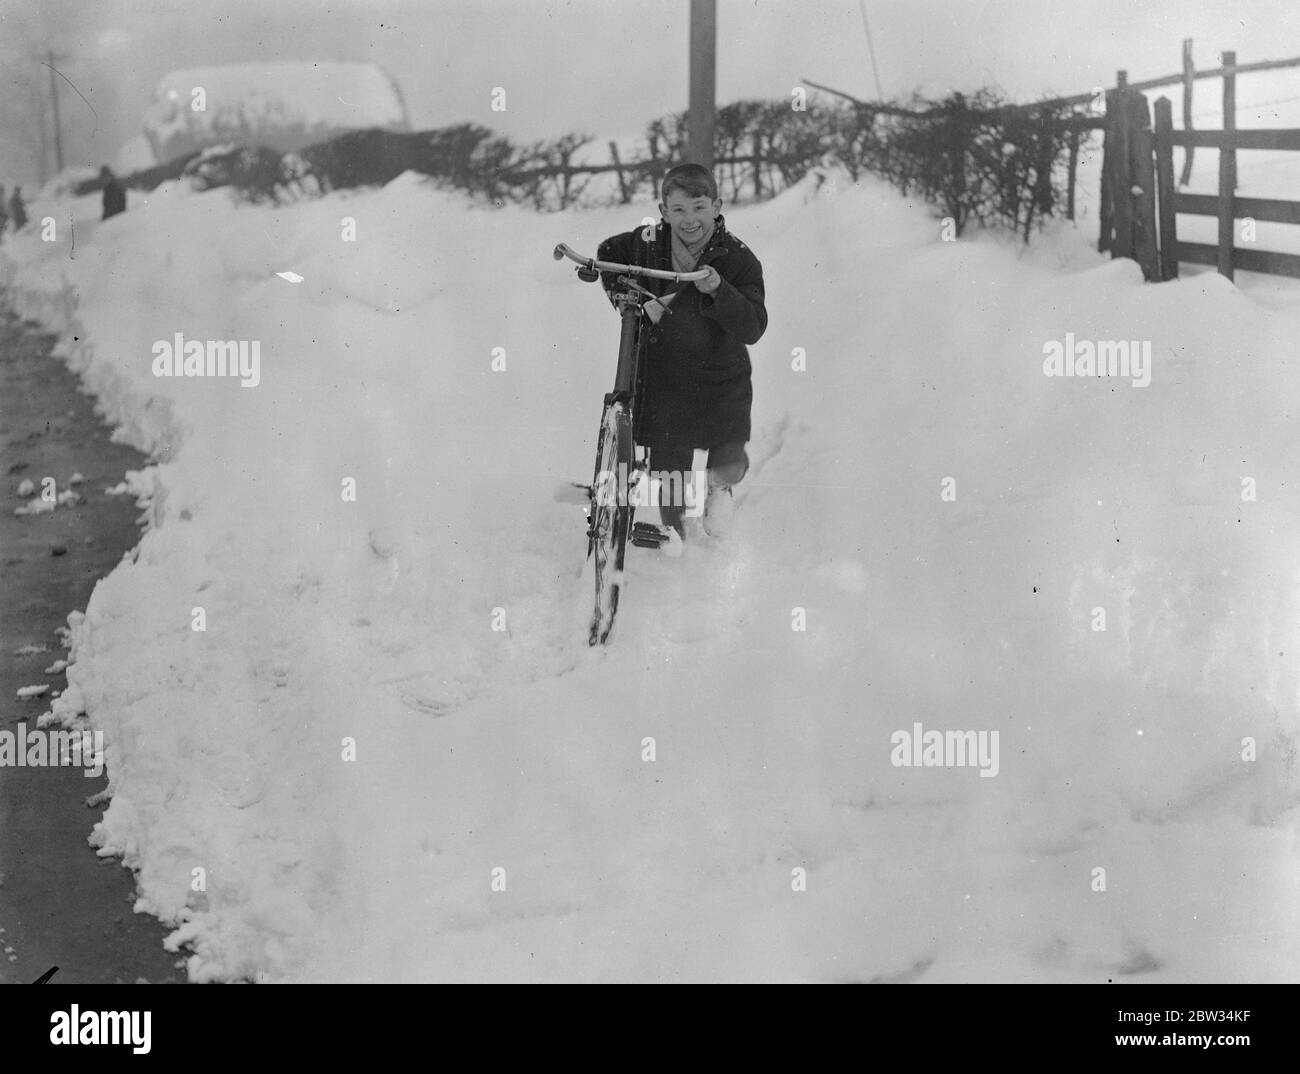 Drifts von Schnee vier Meter tief Block Surrey Straßen zum Verkehr. Drifts von Schnee mehr als vier Fuß in der Tiefe haben Straßen in Surrey und Kent blockiert und machte sie unpassierbar für den Verkehr, Armeen von Männern sind bei der Arbeit Clearing der Straßen. Ein kleiner Junge kämpft auf seinem Fahrrad durch den Schnee. 13 Februar 1932 Stockfoto